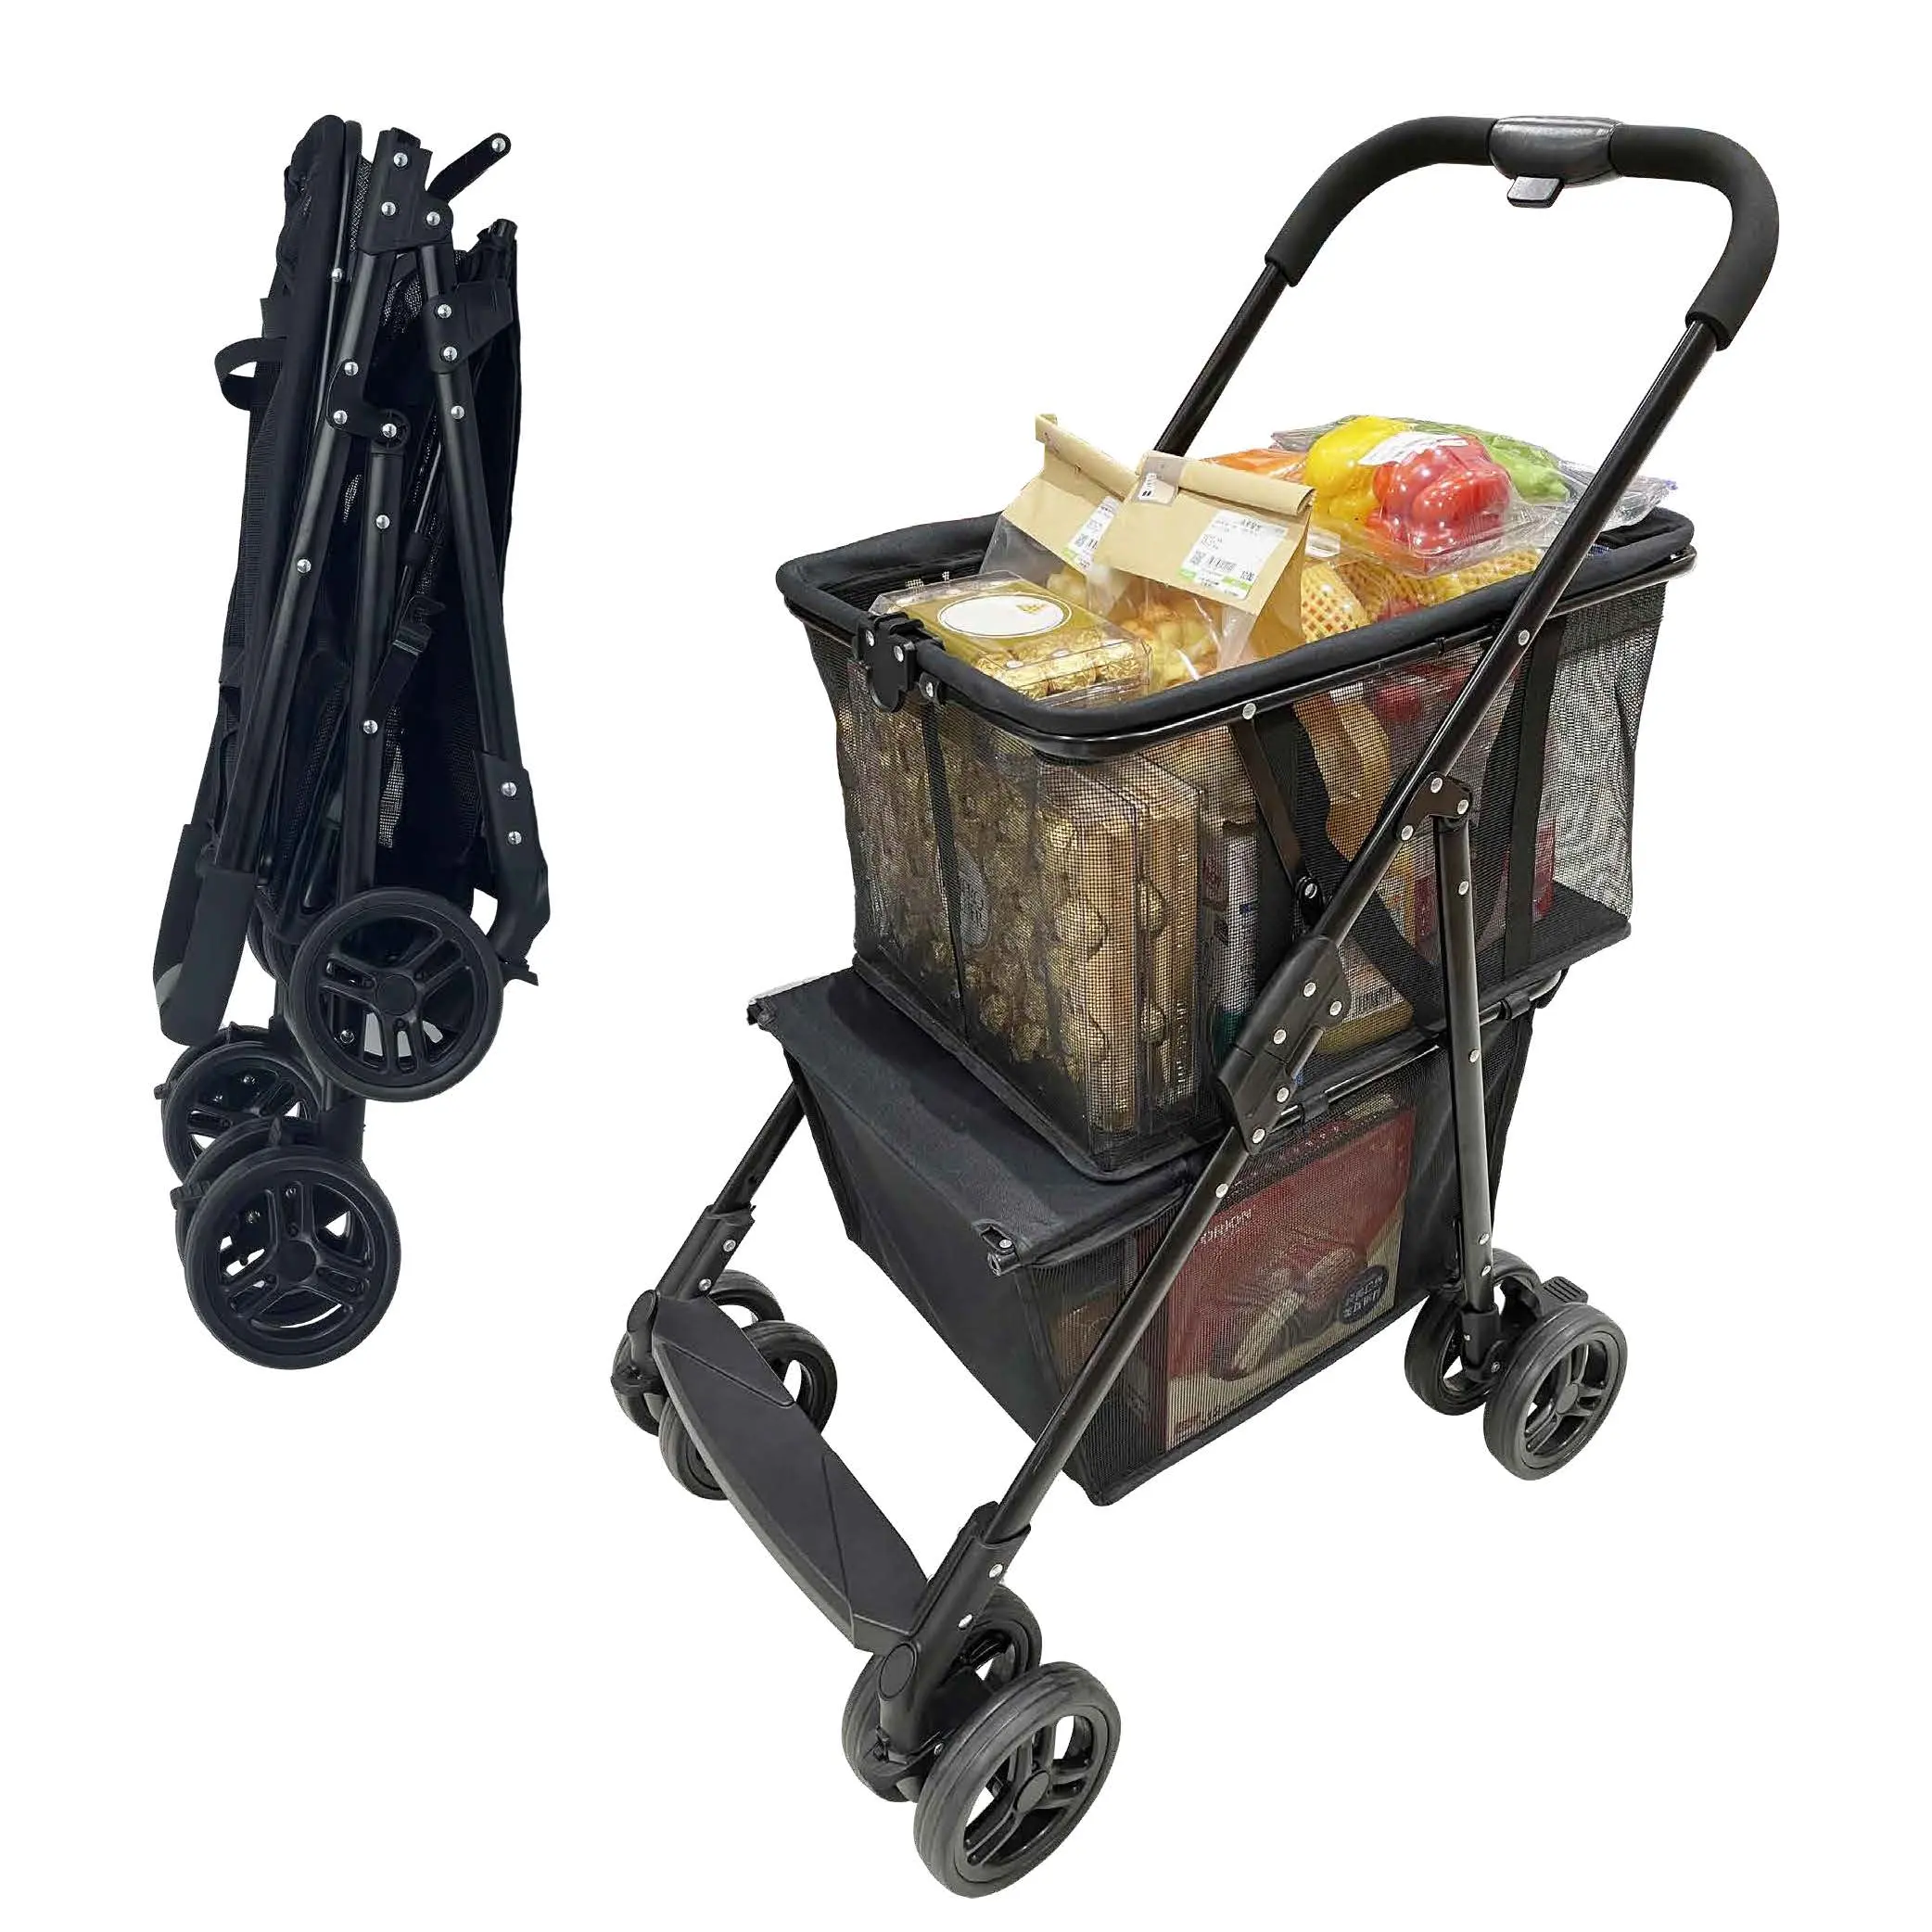 Hot folding pet dog cat 4 wheeled cart luxury supermarket shopping cart outdoor travel